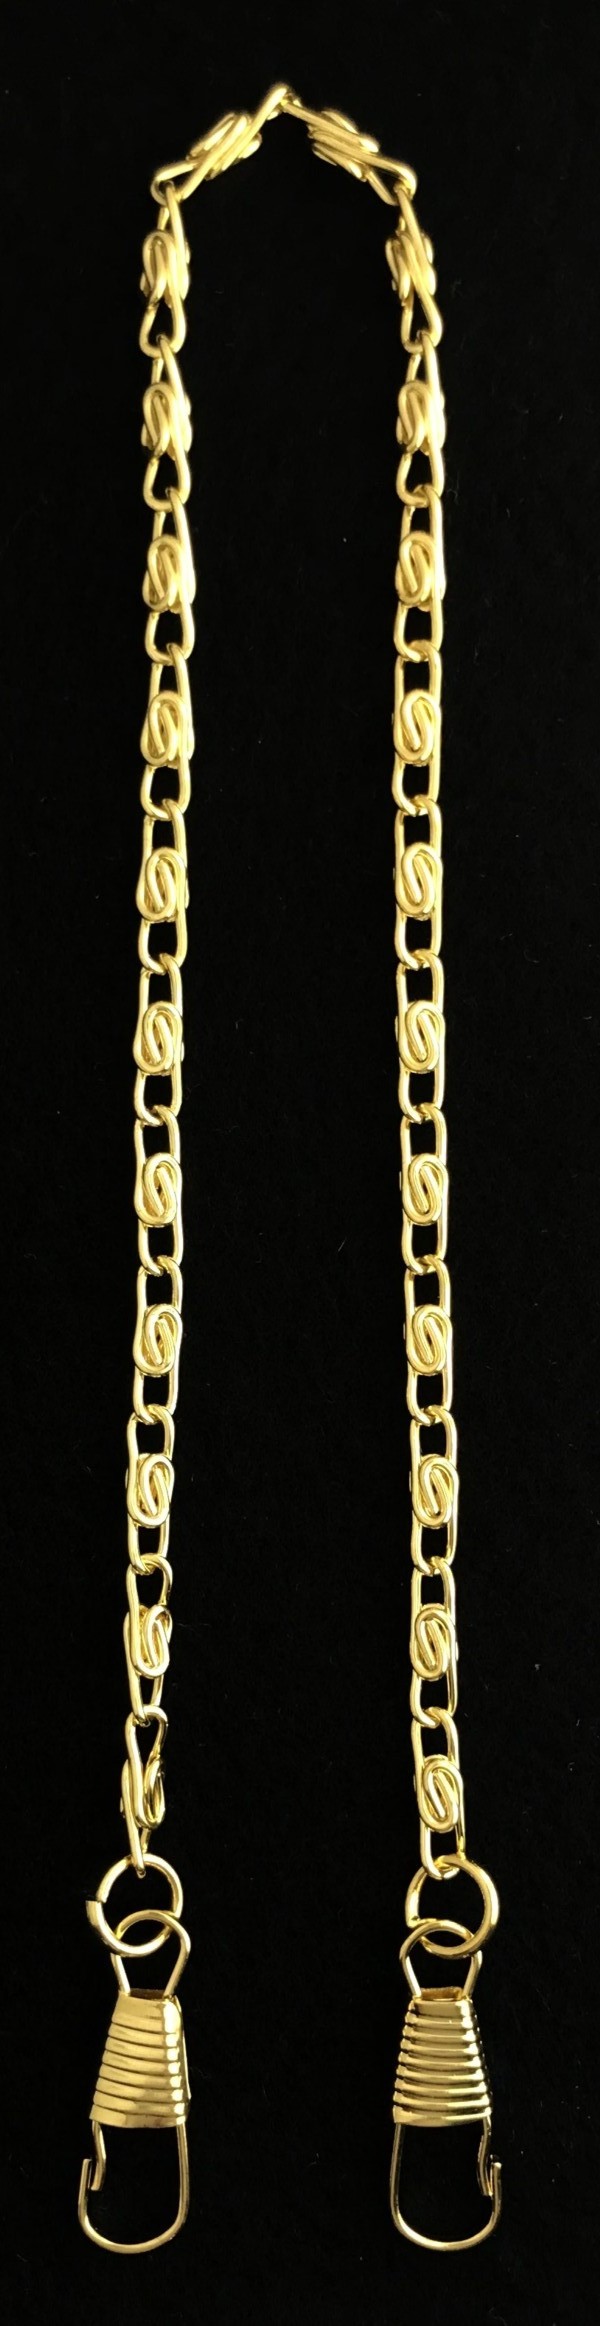 Chain Collar Neck Preventer Chain Gold New